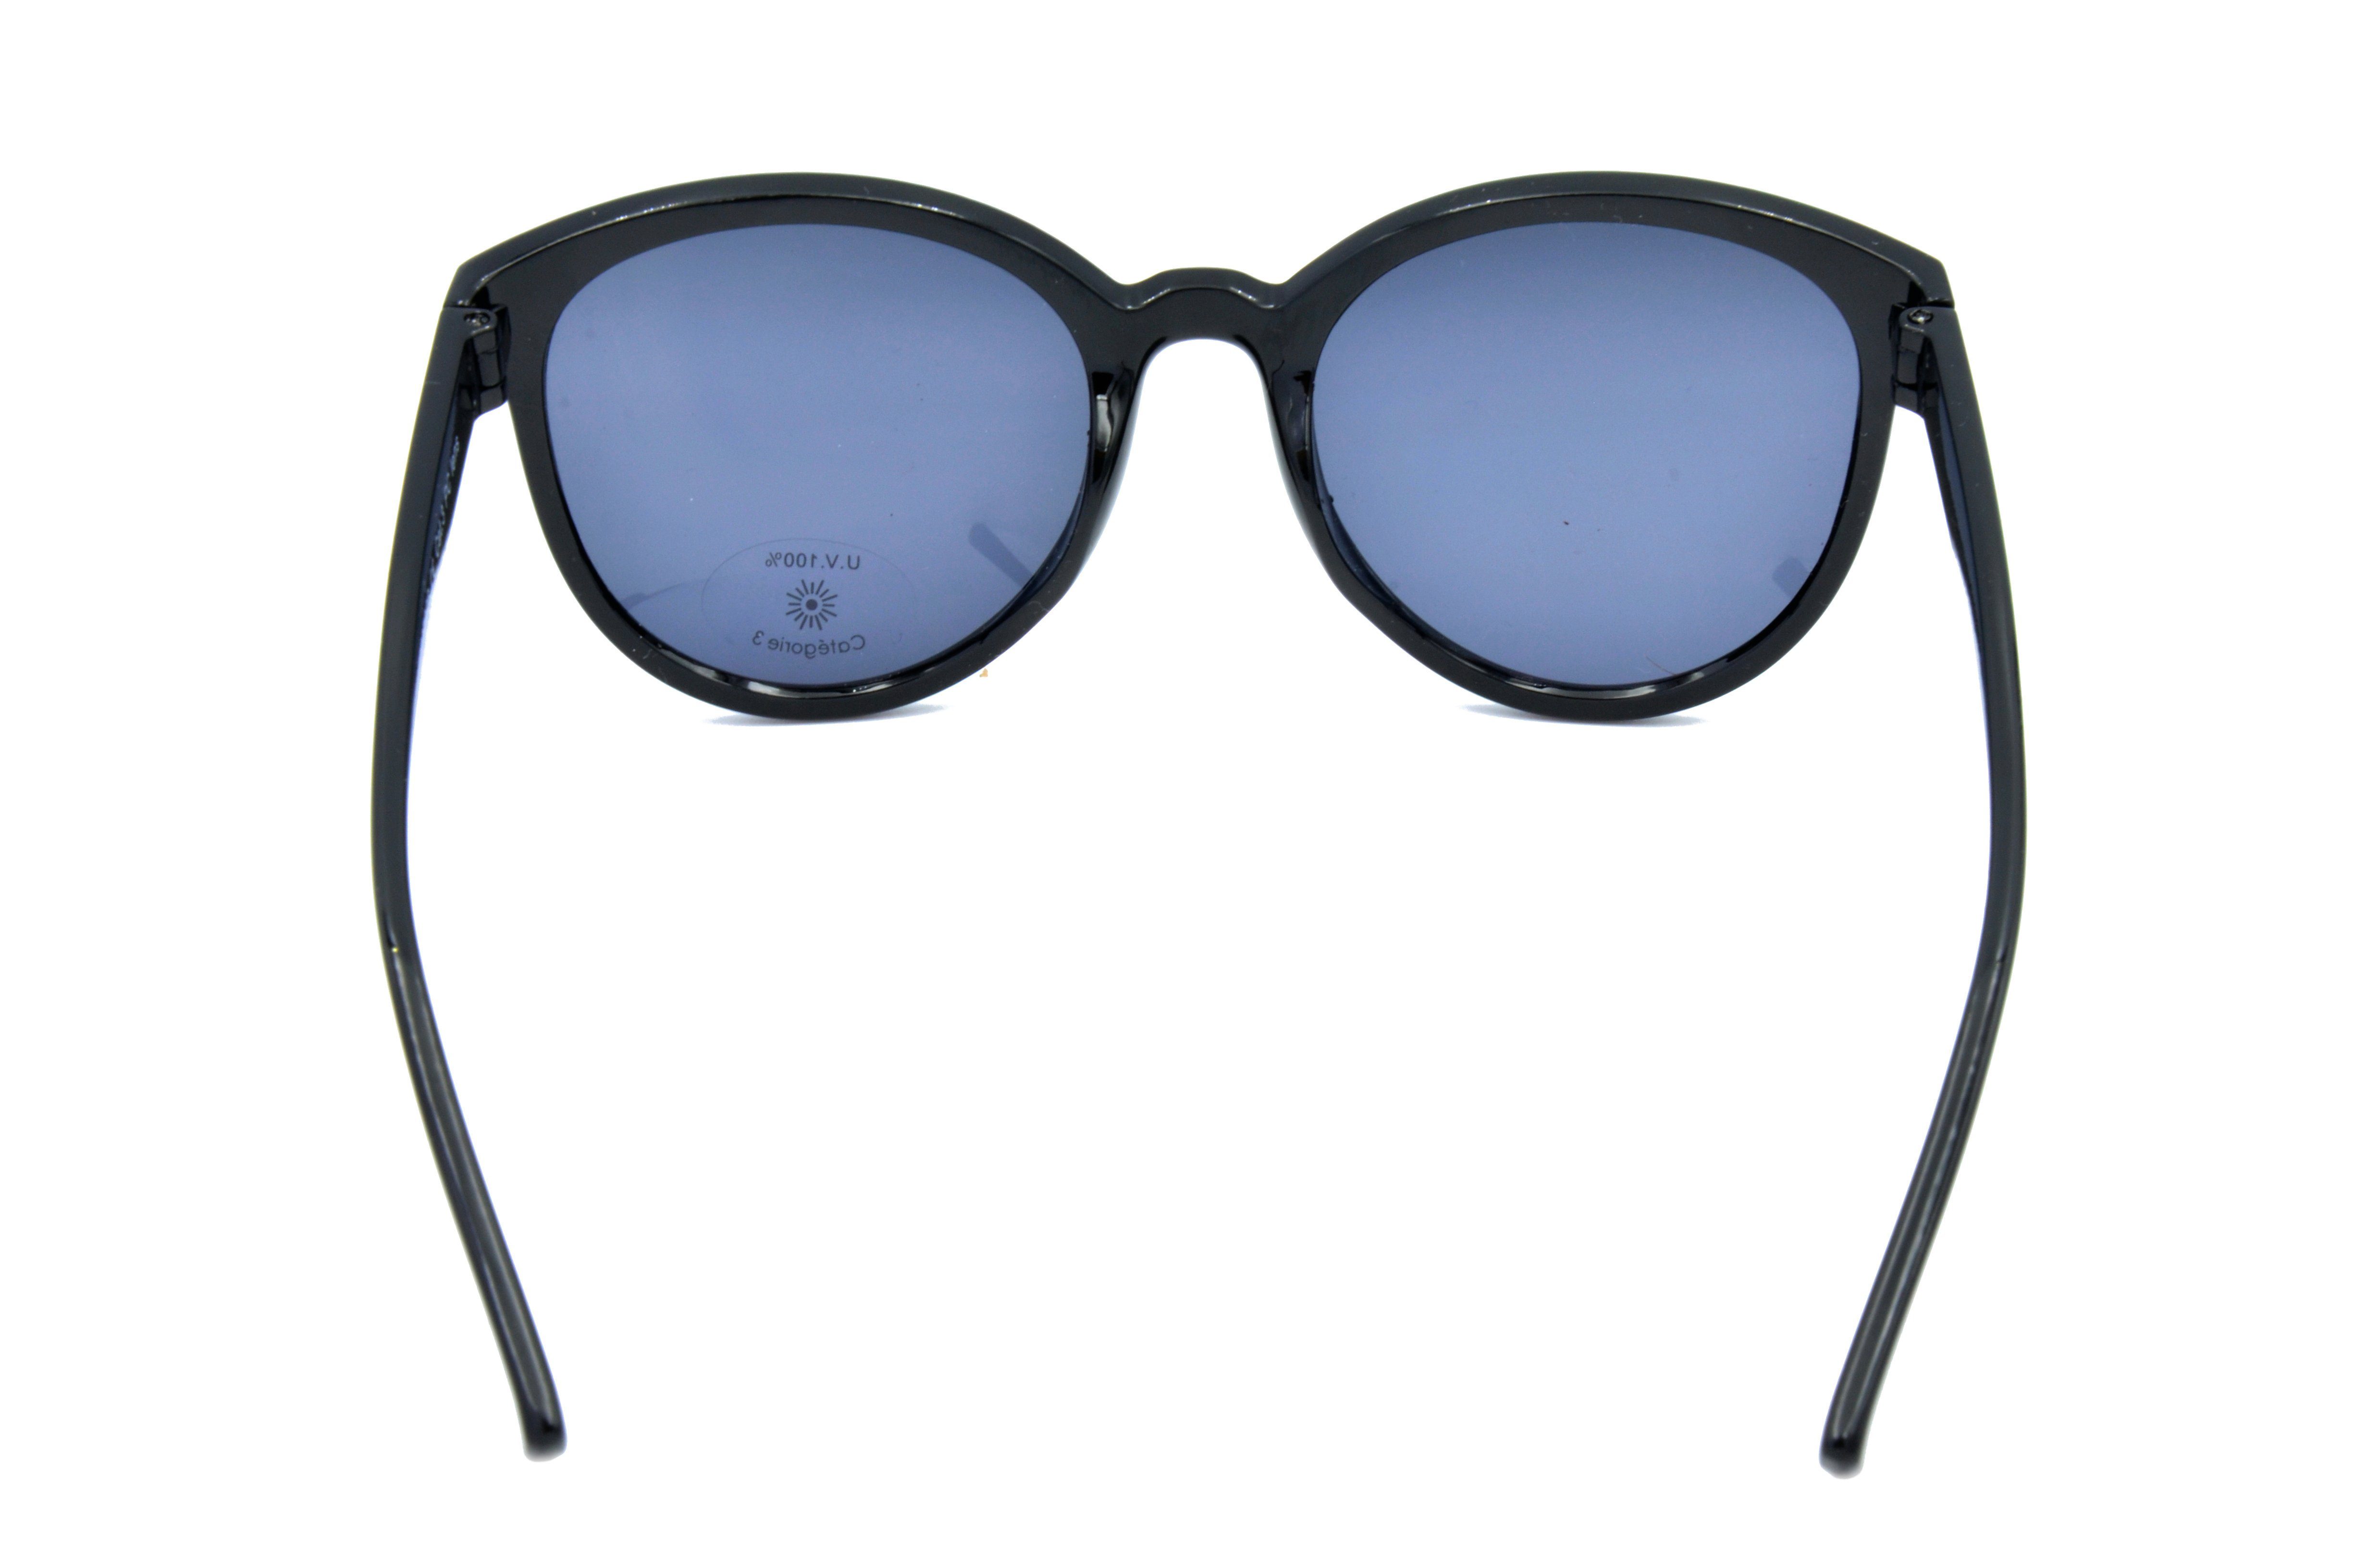 Sonnenbrille Damen Mode Brille GAMSSTYLE "Pianolackoptik", Gamswild schwarz WM7026